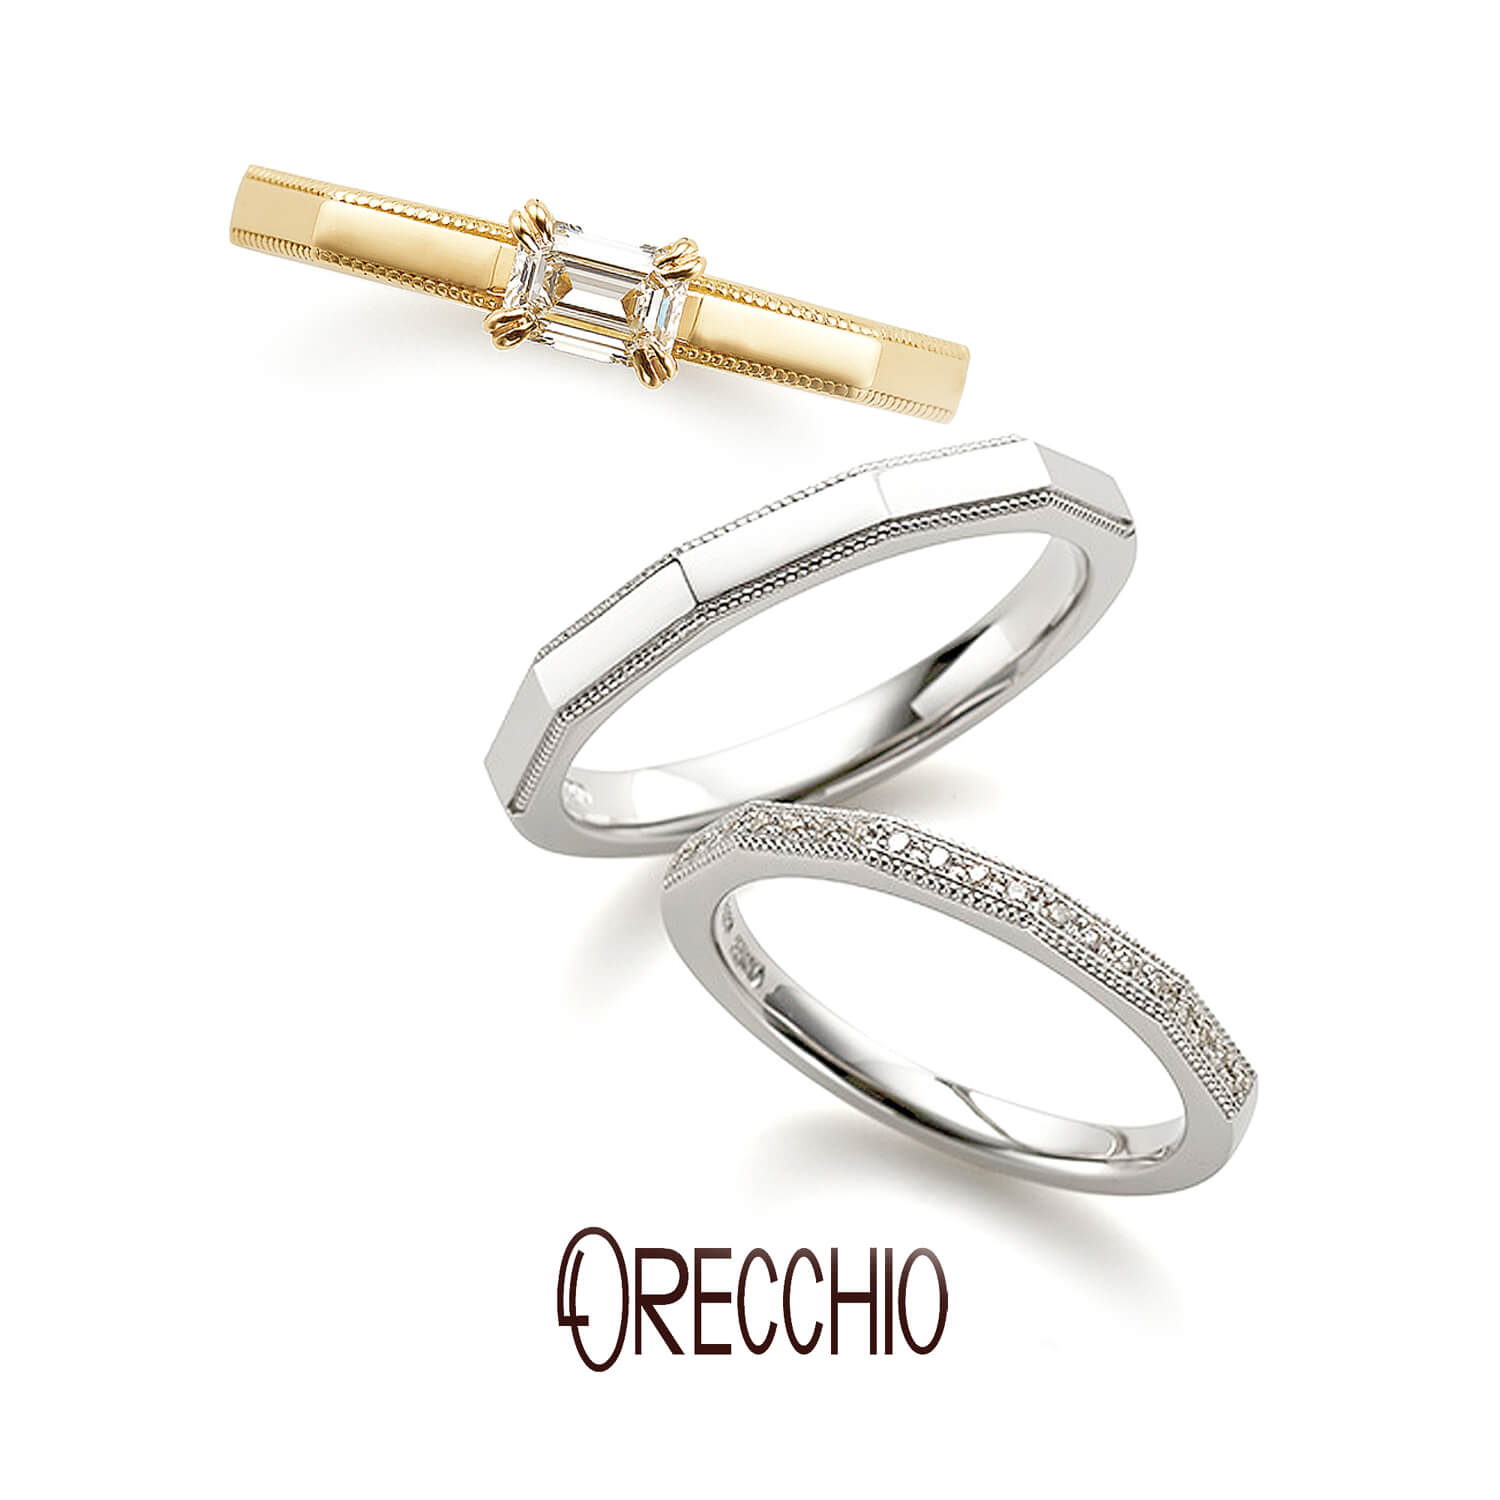 ORECCHIO オレッキオの婚約指輪でエンゲージリングと結婚指輪でマリッジリングの safari サファリ